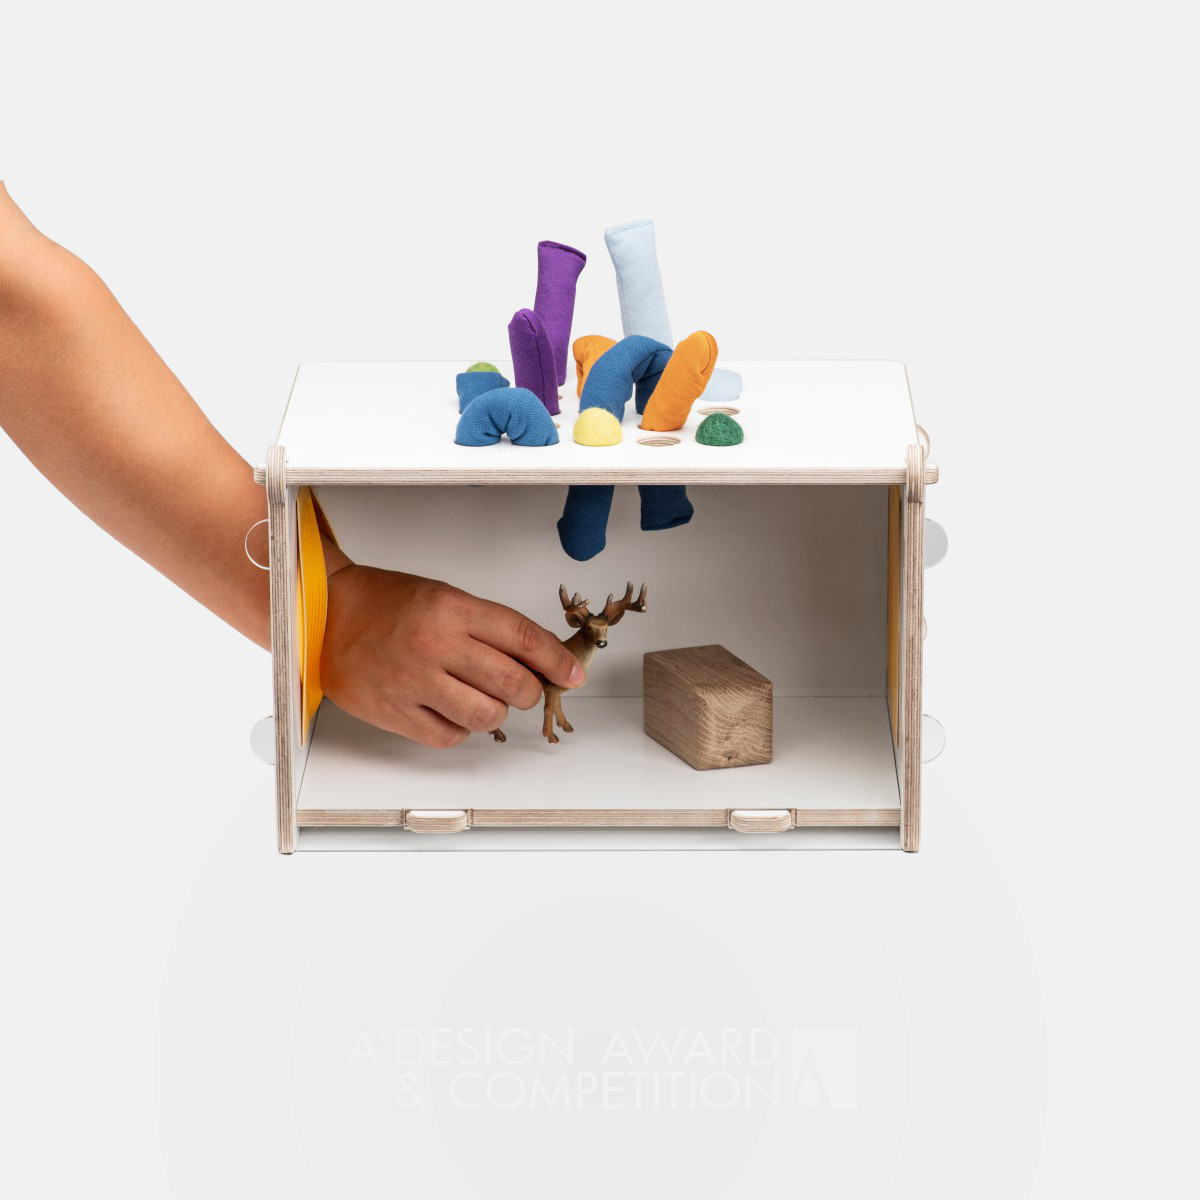 Sensory Guessing Box Mirabu: Ein Spielzeug, das die Sinne anregt